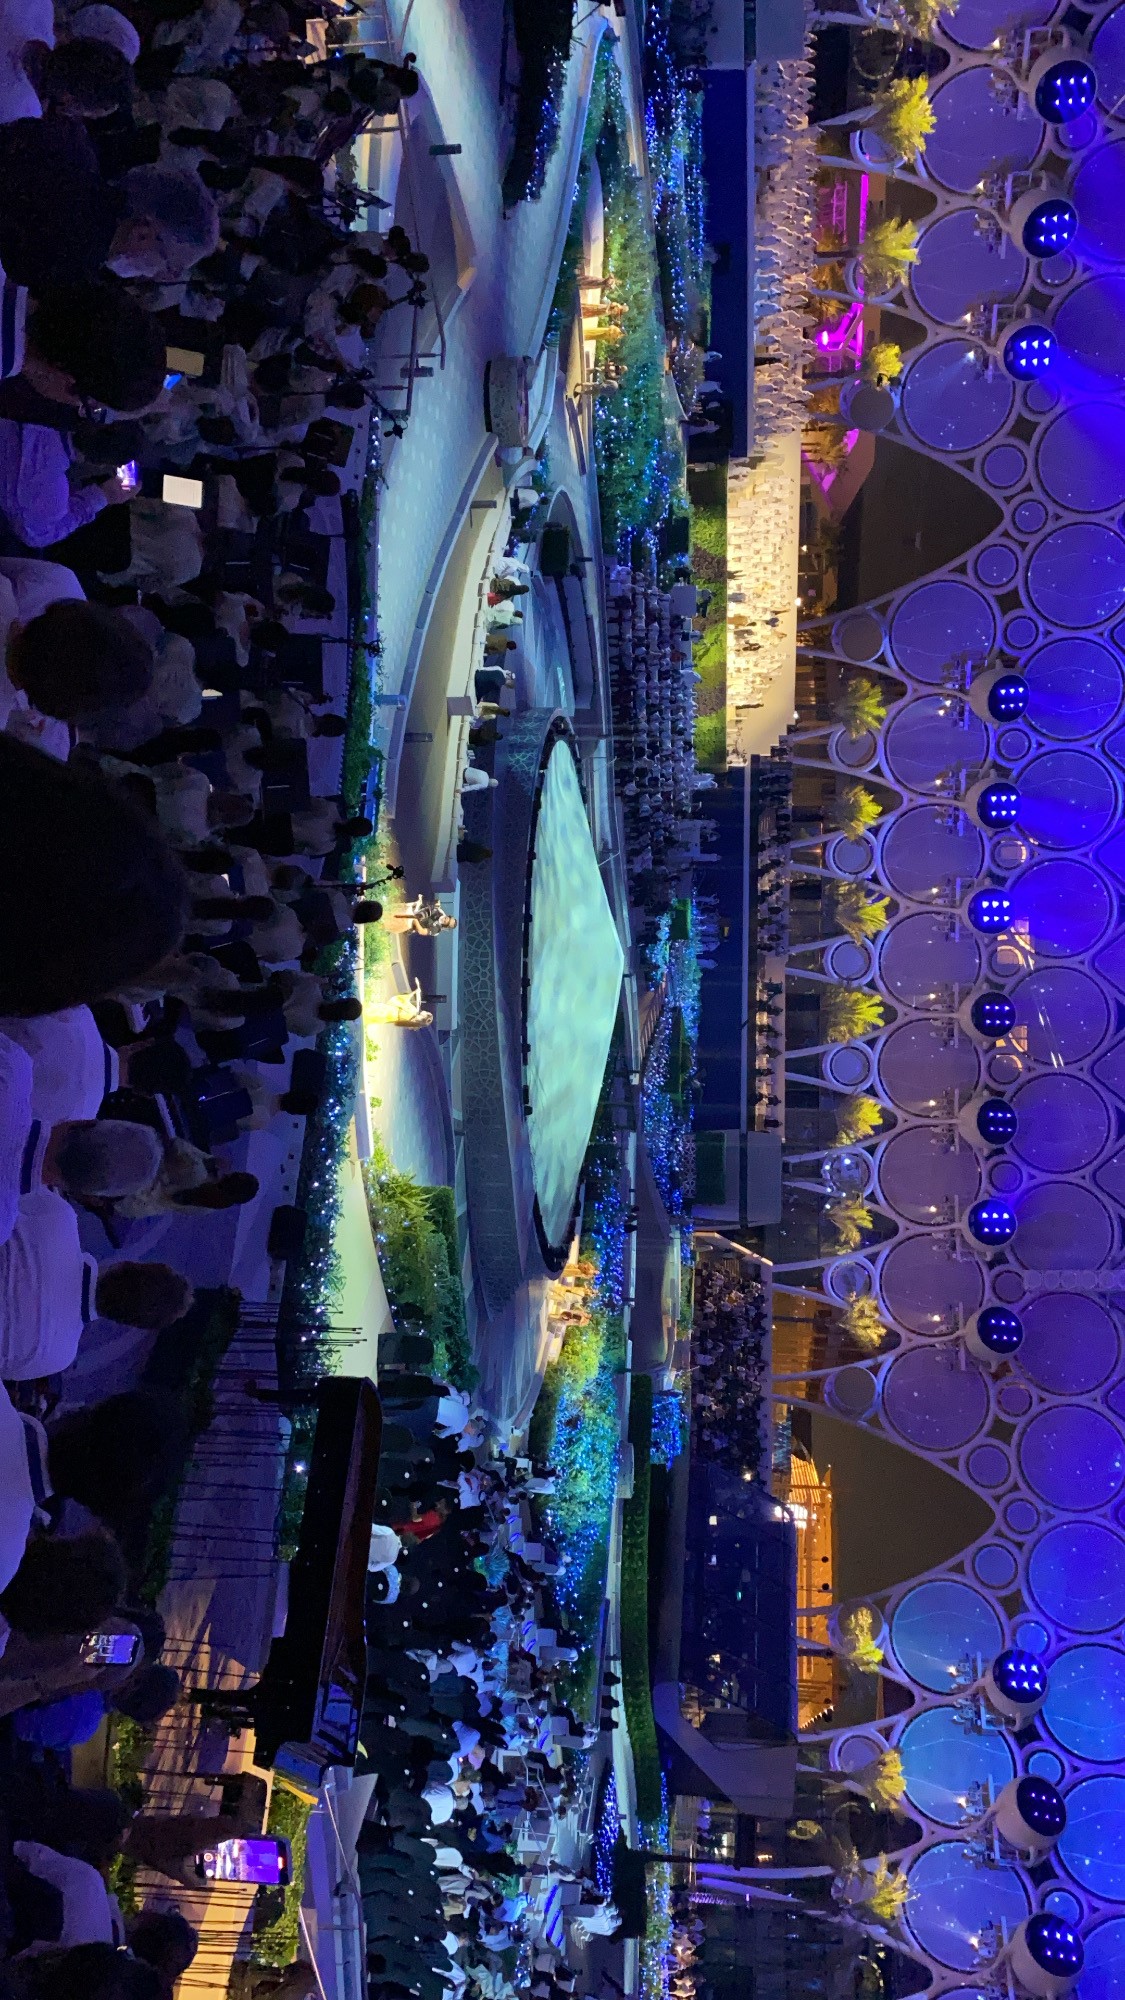 Al Wasl Plaza at Expo 2020 Dubai